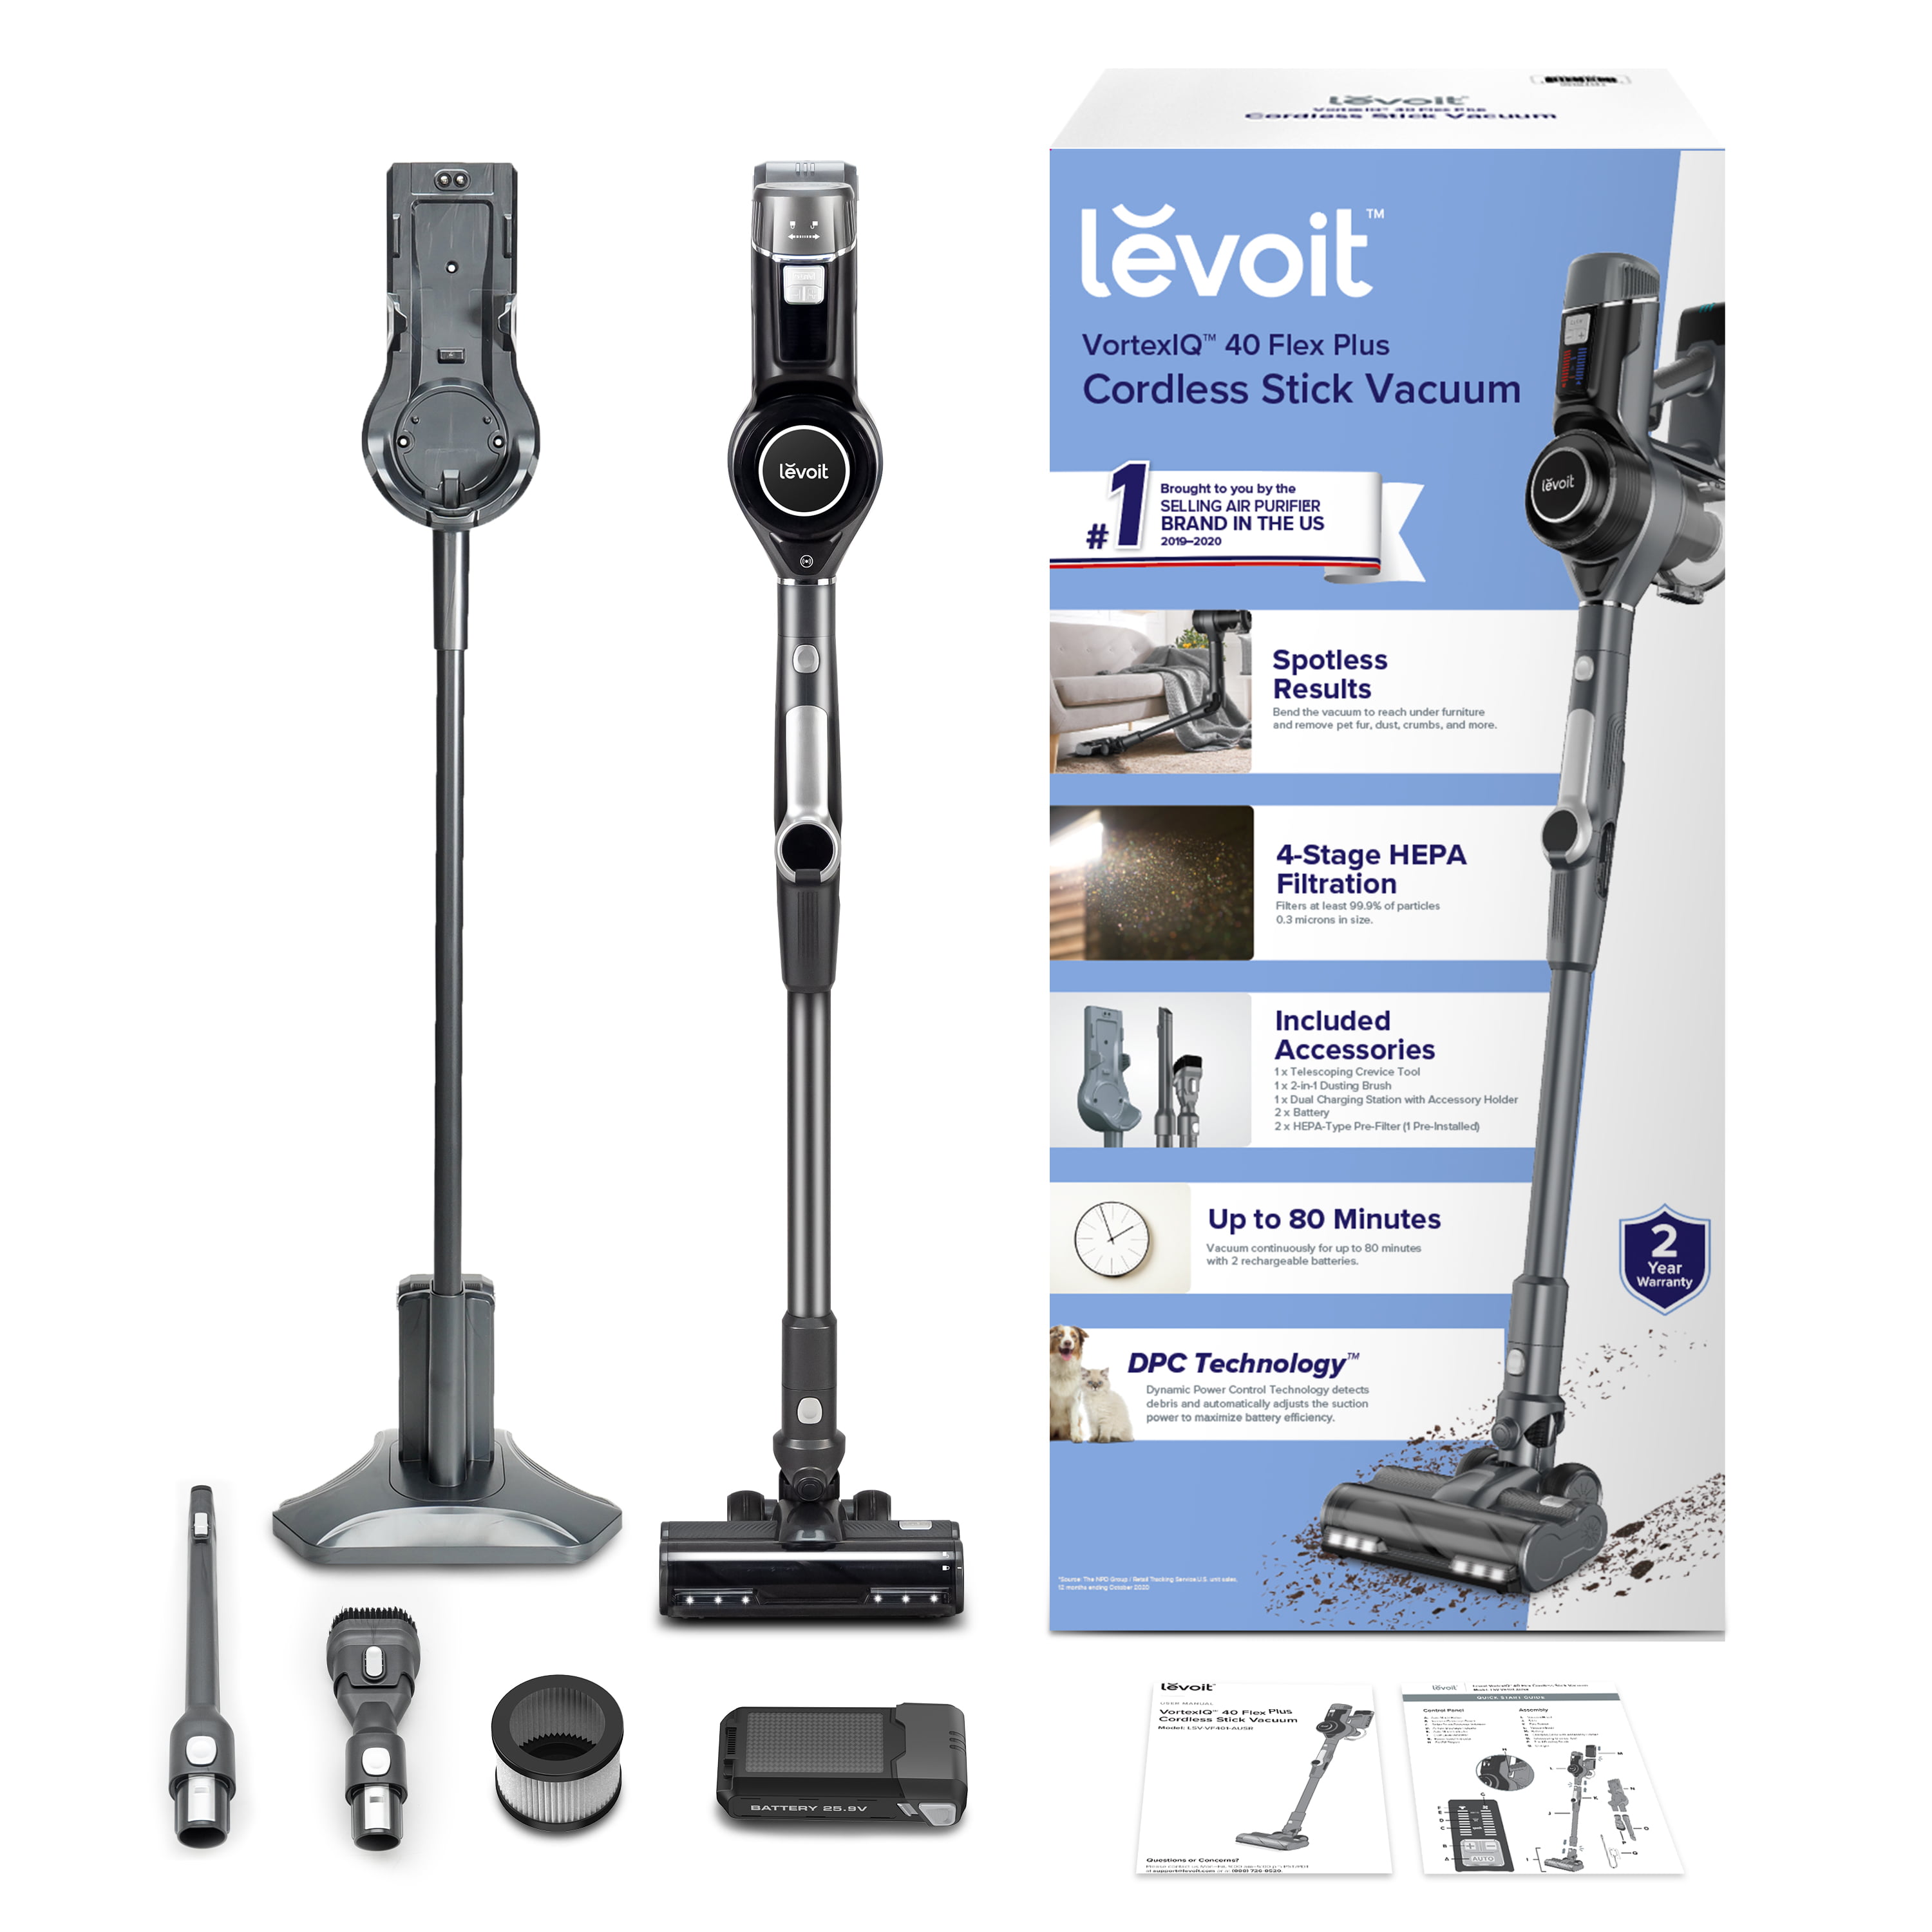 Levoit VortexIQ 40 Cordless Stick Vacuum